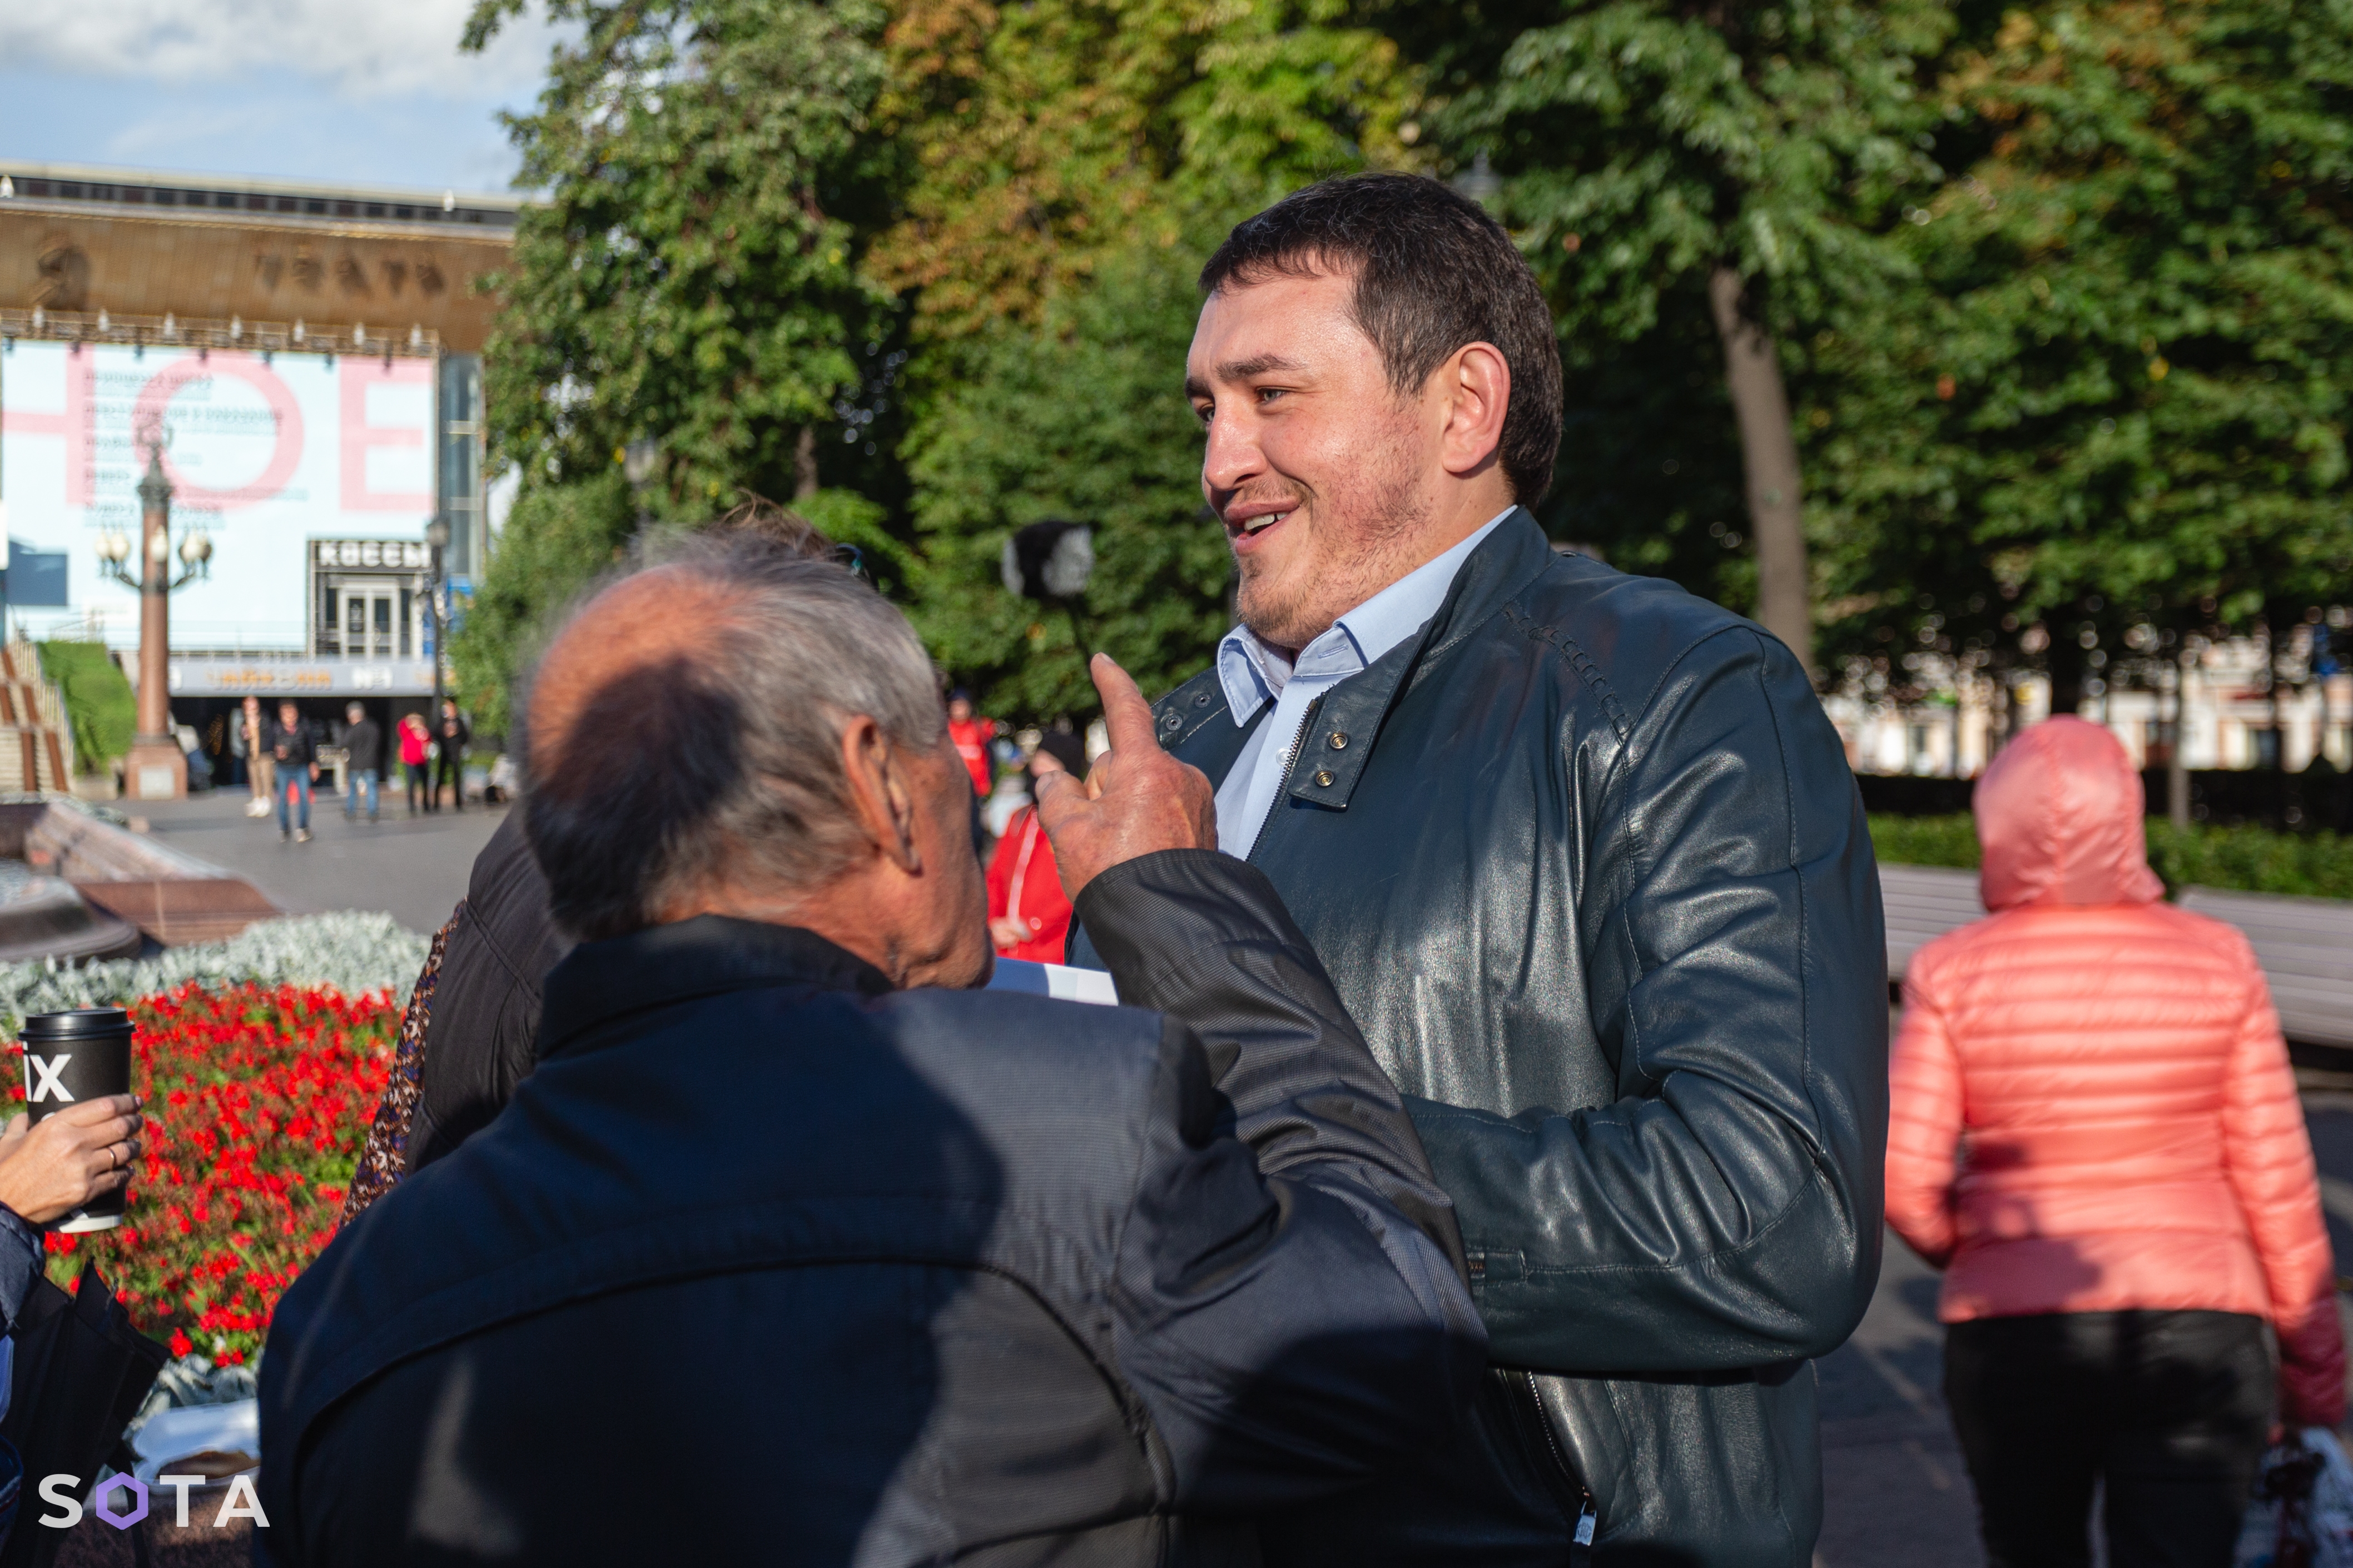 Виталий Бородин на предвыборном митинге Валерия Рашкина провоцирует участников на конфликт.
Руслан Терехов / SOTA  